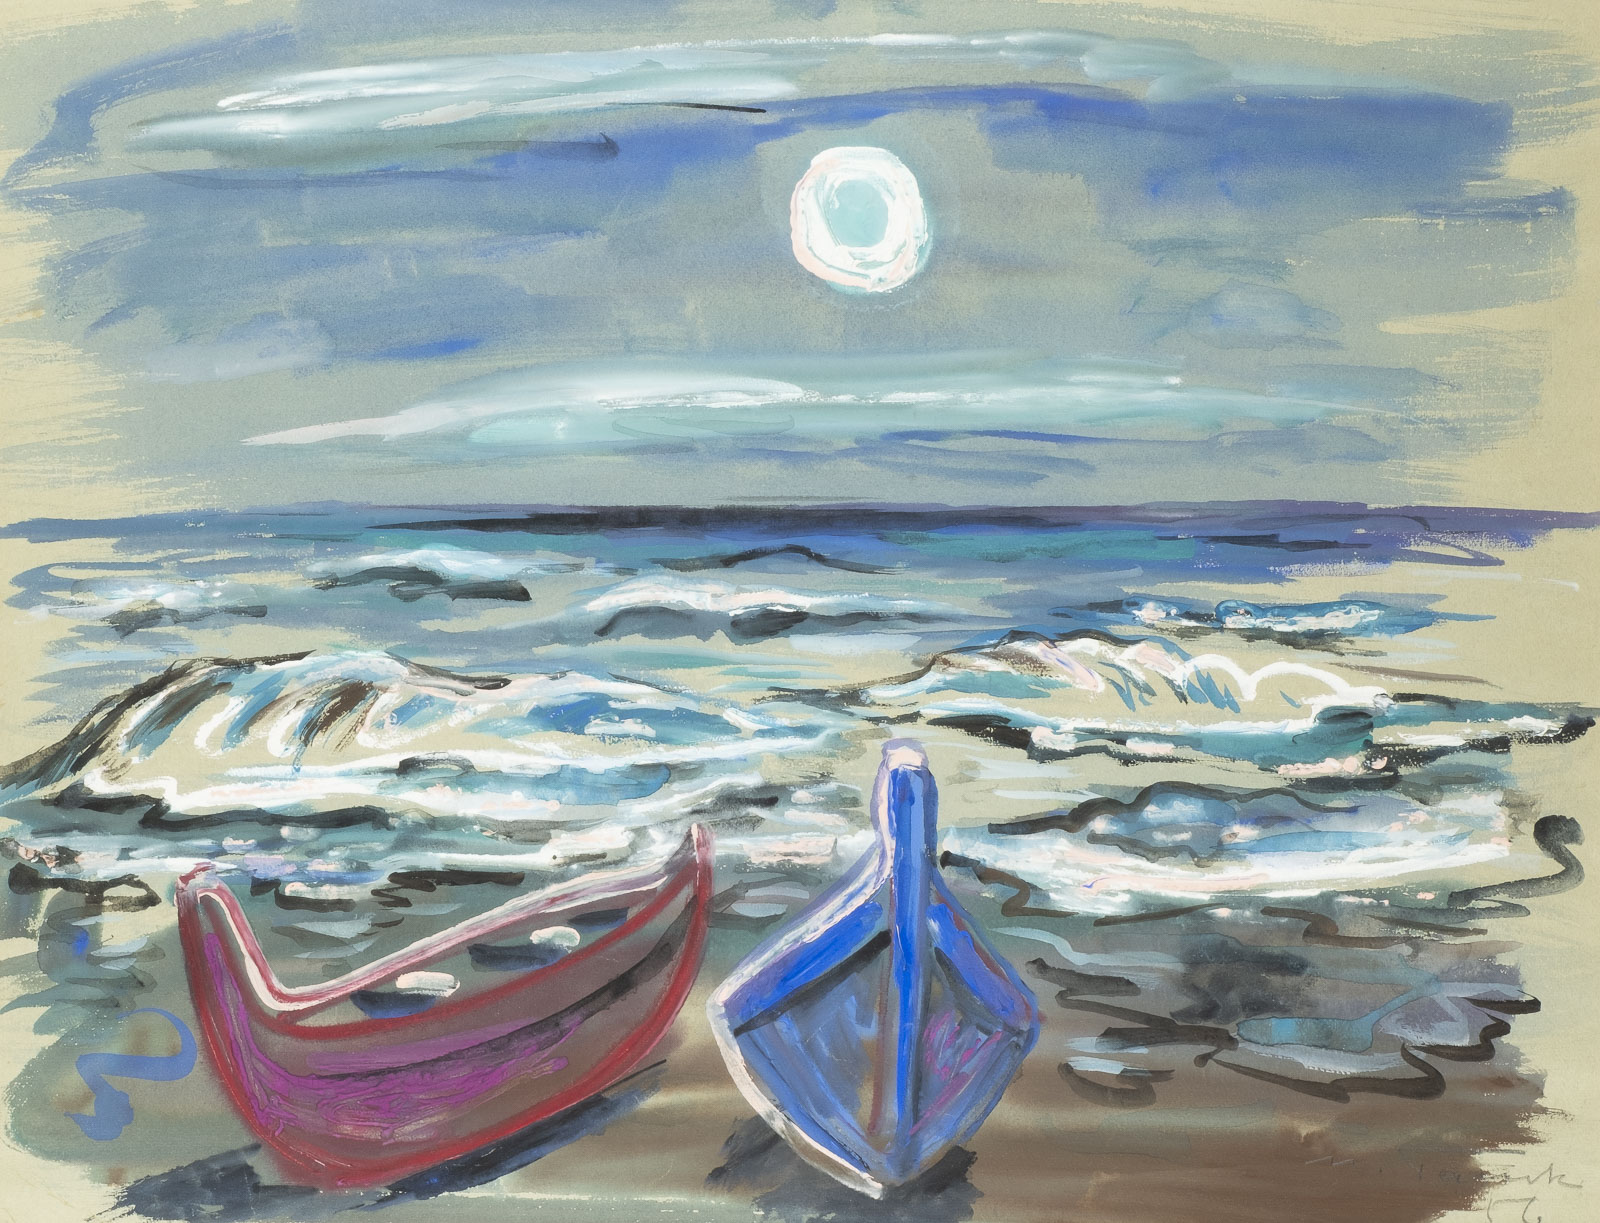 Nächtliche Stimmung am Meer (1956)